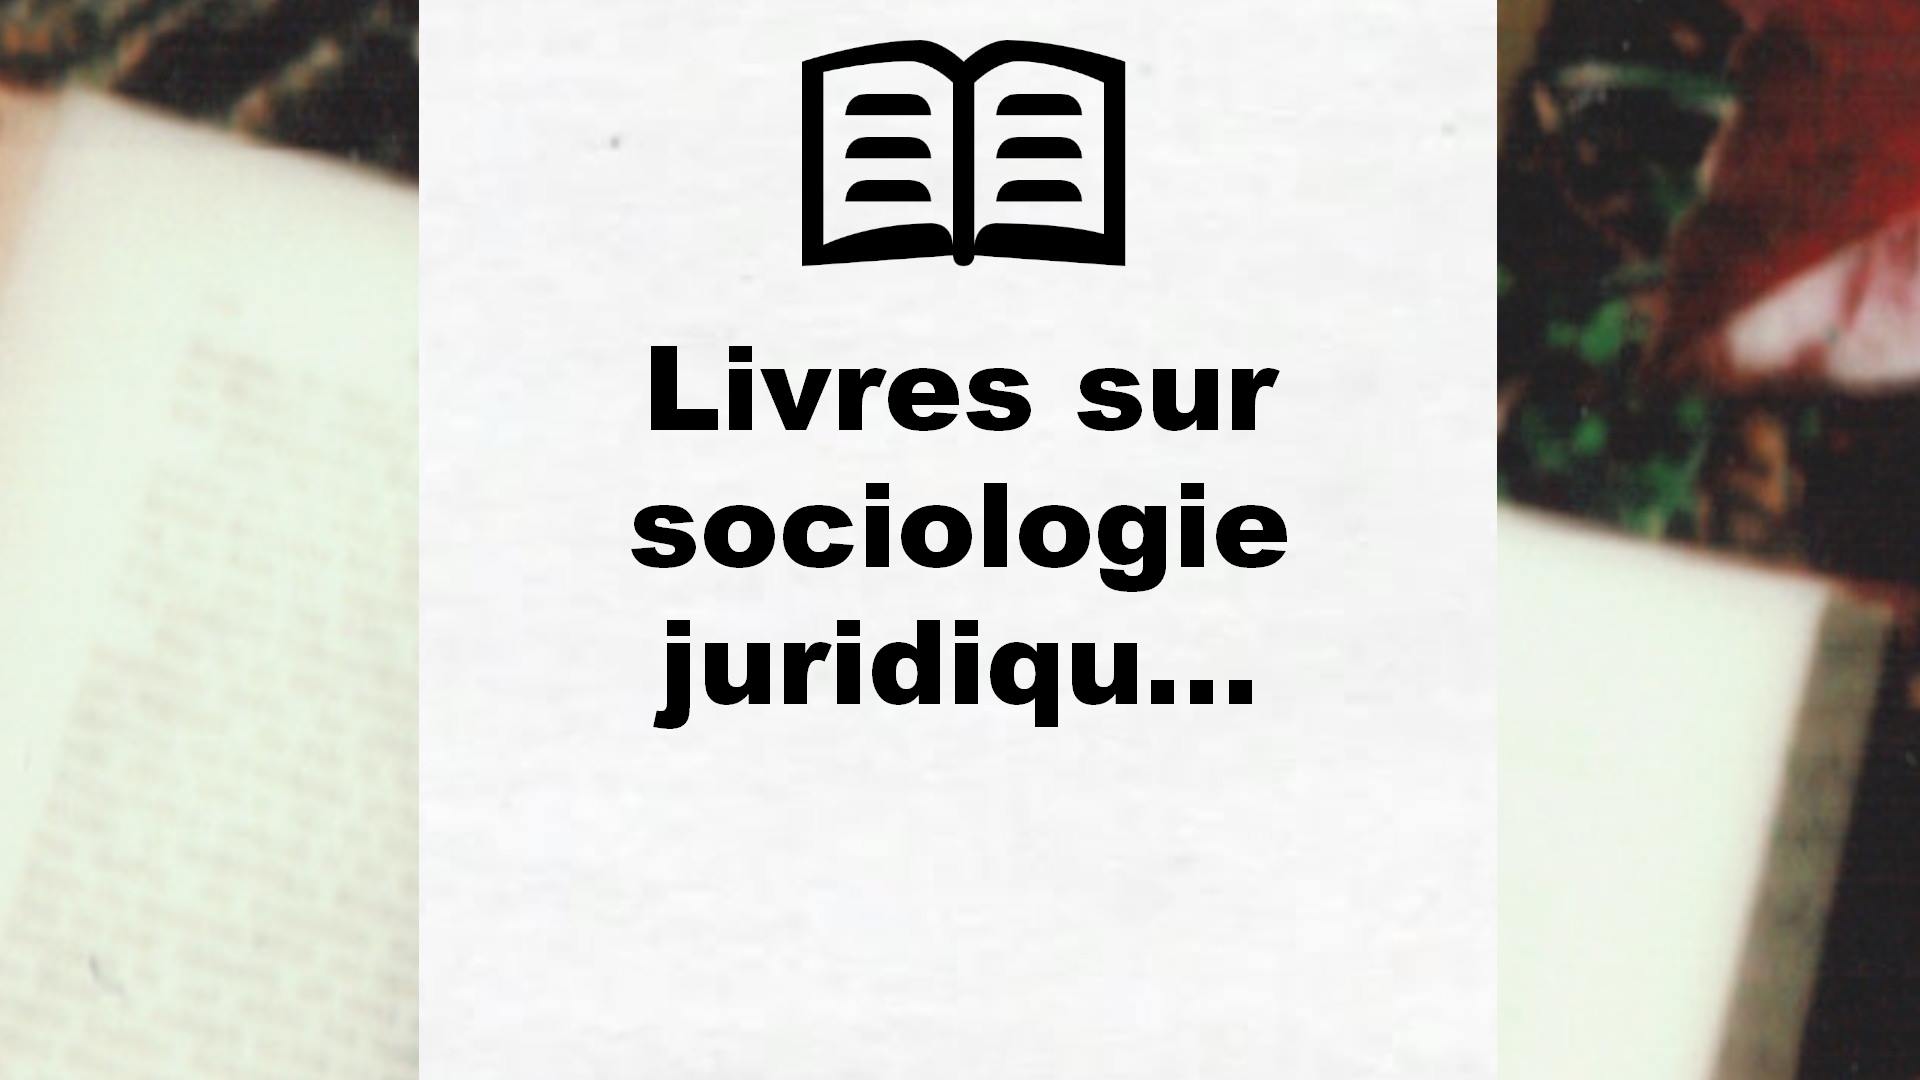 Livres sur sociologie juridique